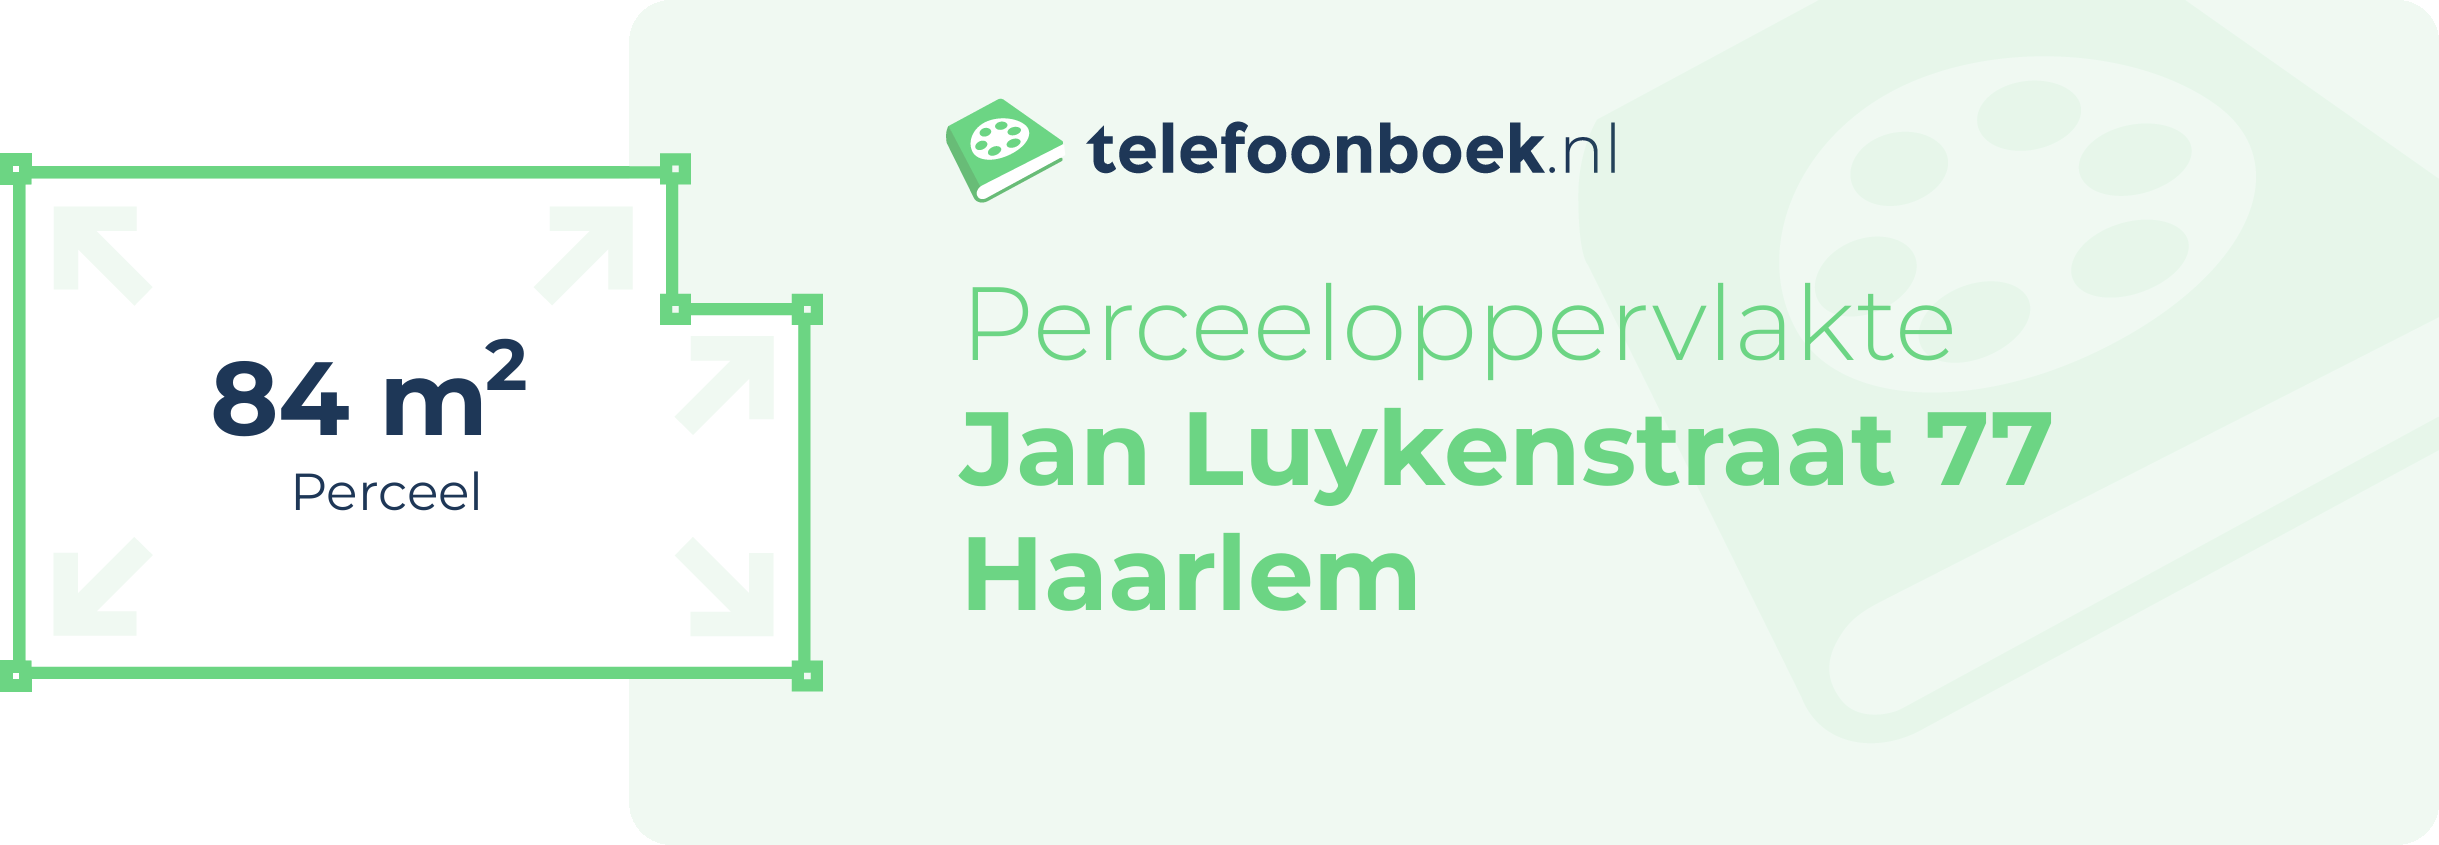 Perceeloppervlakte Jan Luykenstraat 77 Haarlem